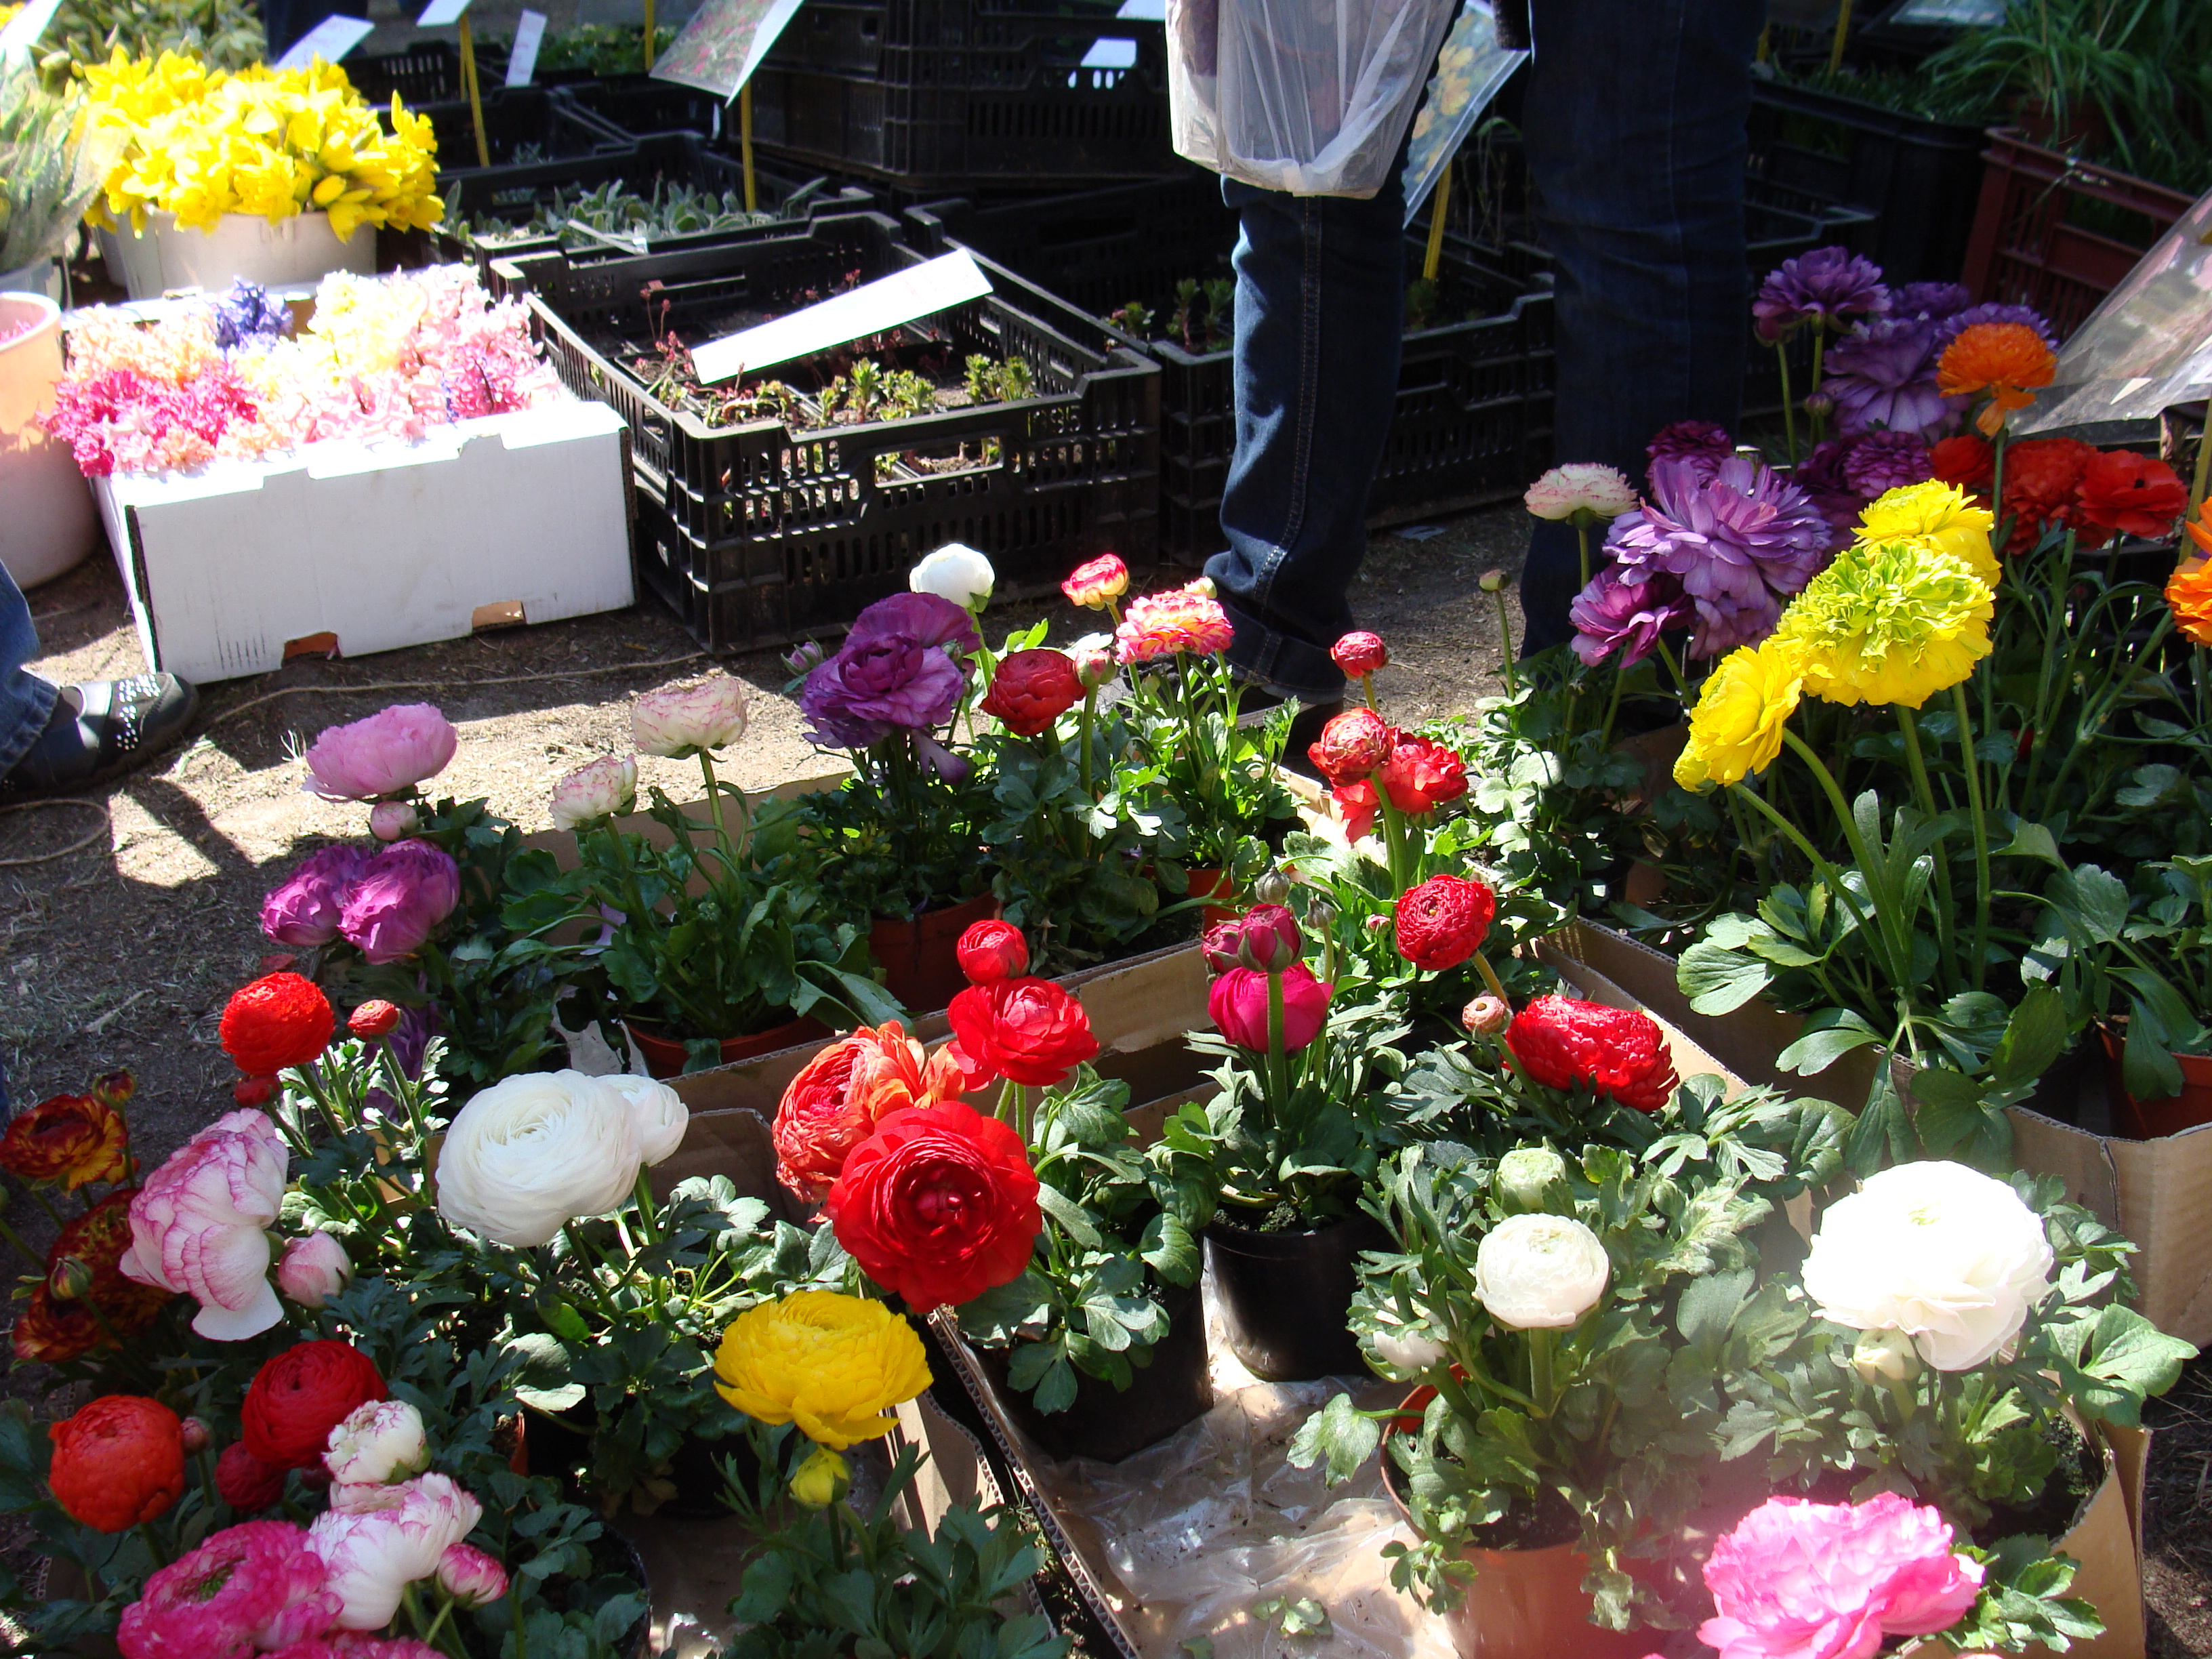 Wiosenne Targi Ogrodnicze „Pamiętajcie o ogrodach” już na stałe wpisały się w kalendarz wiosennych imprez w Olsztynie. Pierwsze odbyły się w 2009 roku